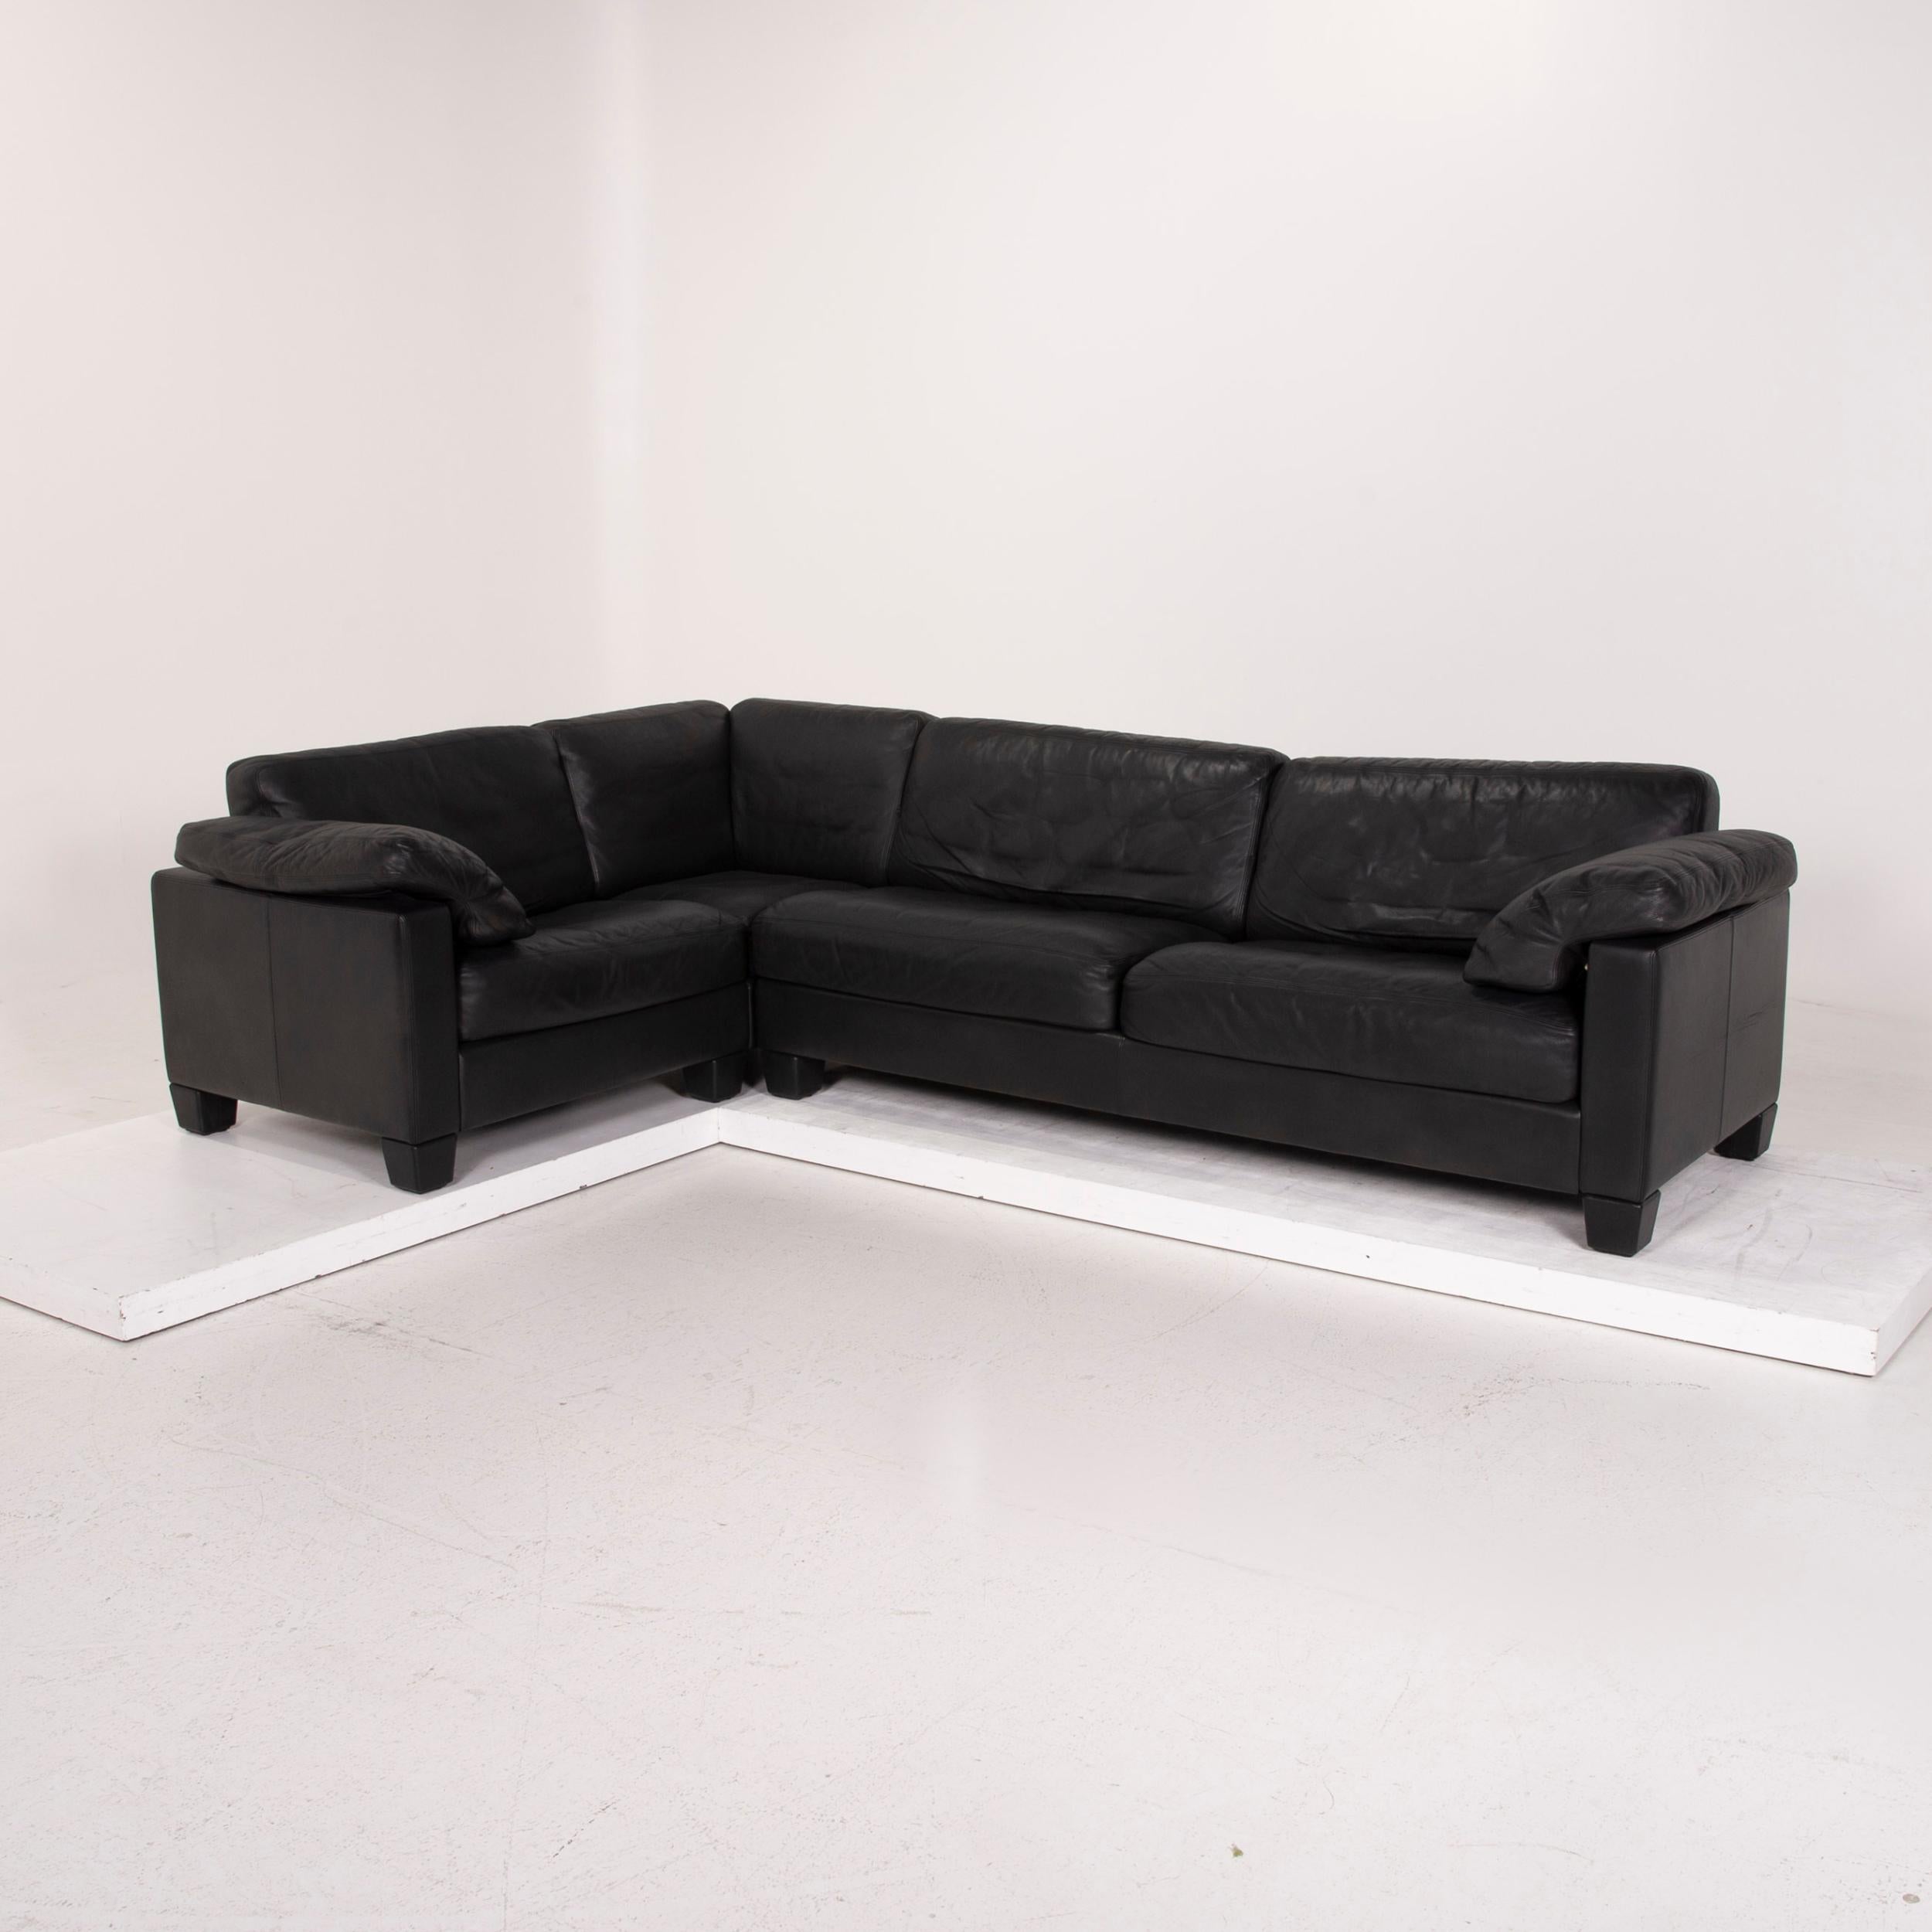 De Sede Leather Sofa Dark Green Corner Sofa In Fair Condition For Sale In Cologne, DE